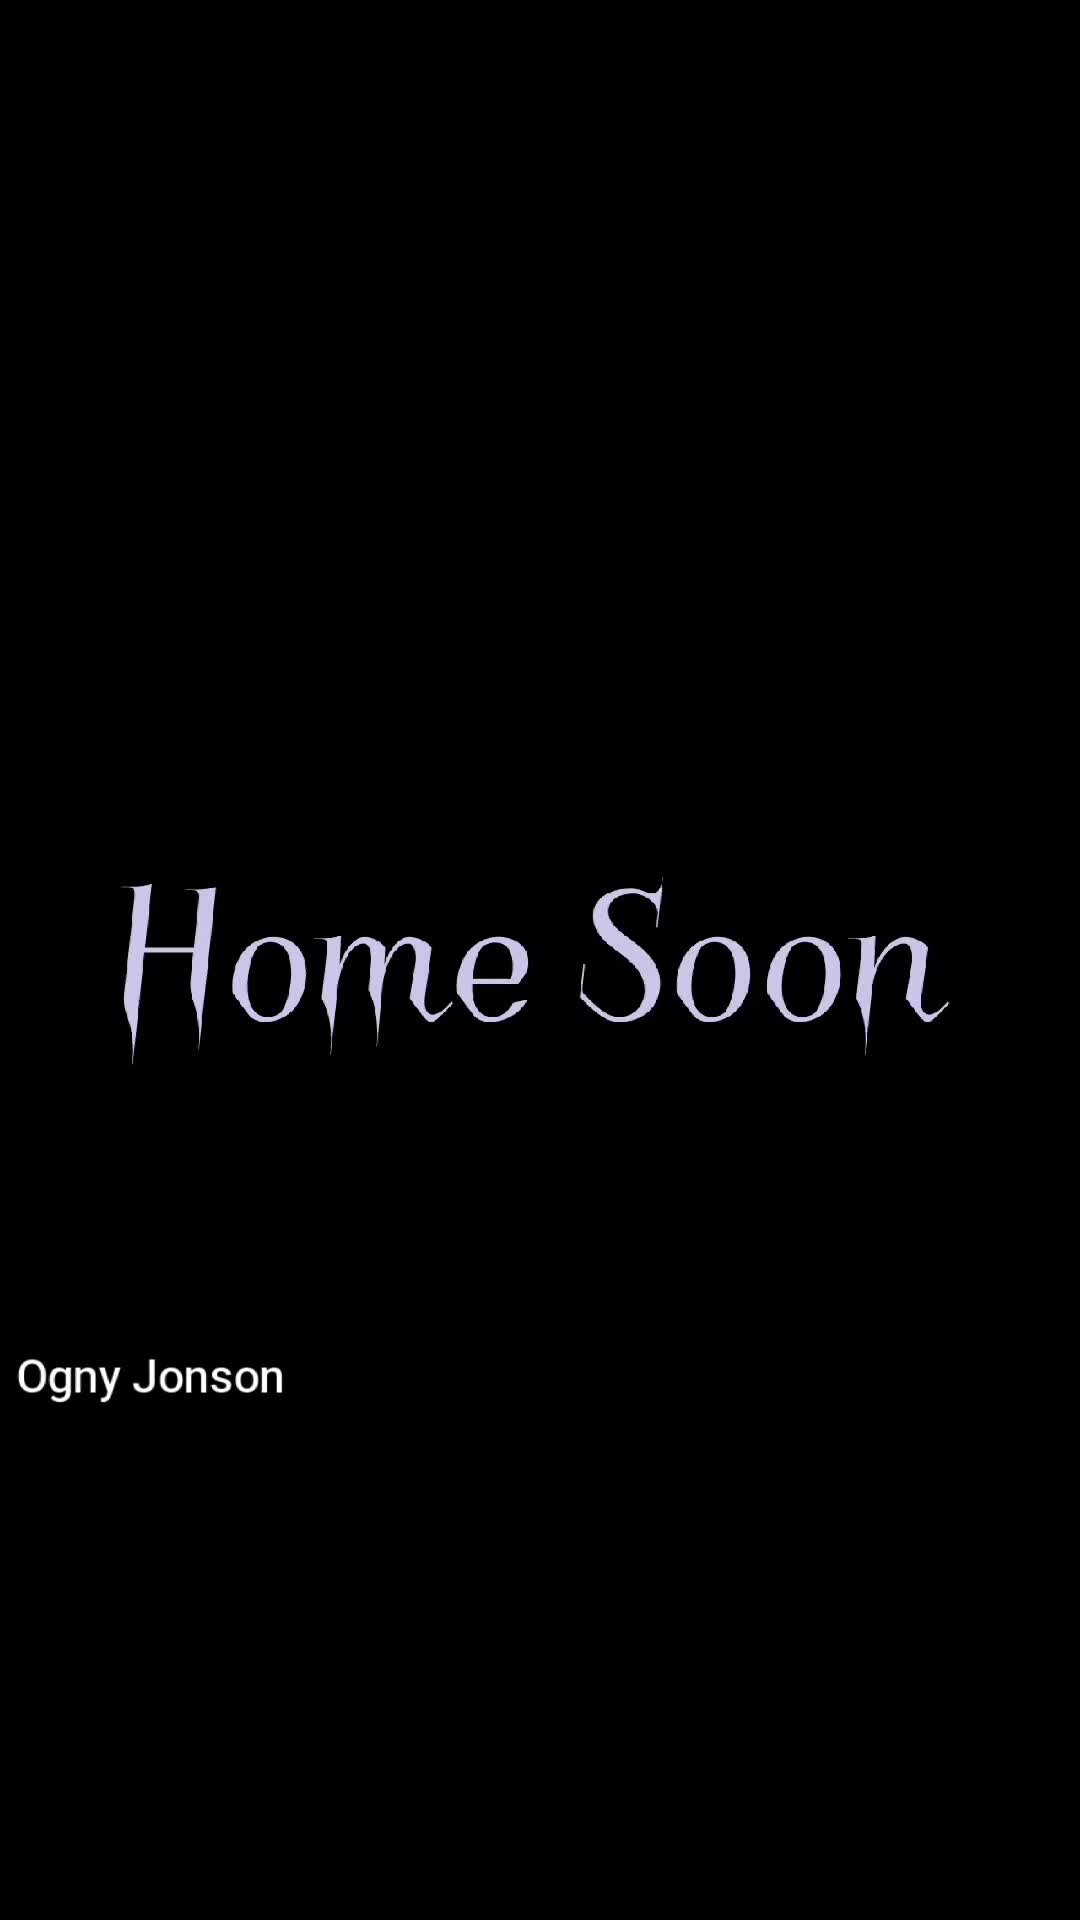 Ogny Johnson home soon meme